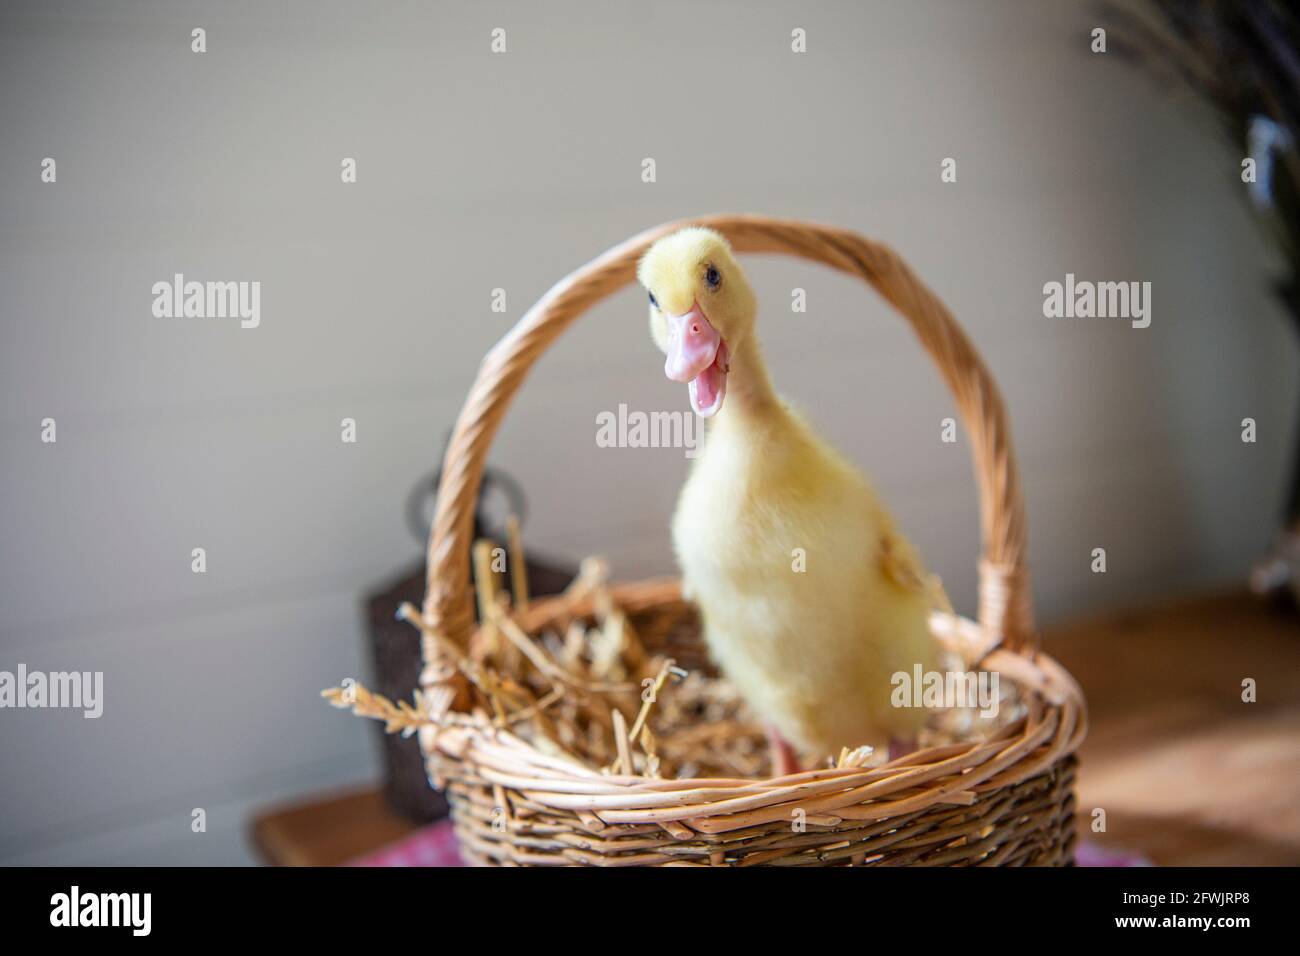 Anatra Aylesbury Duck Duck Duckling Foto Stock